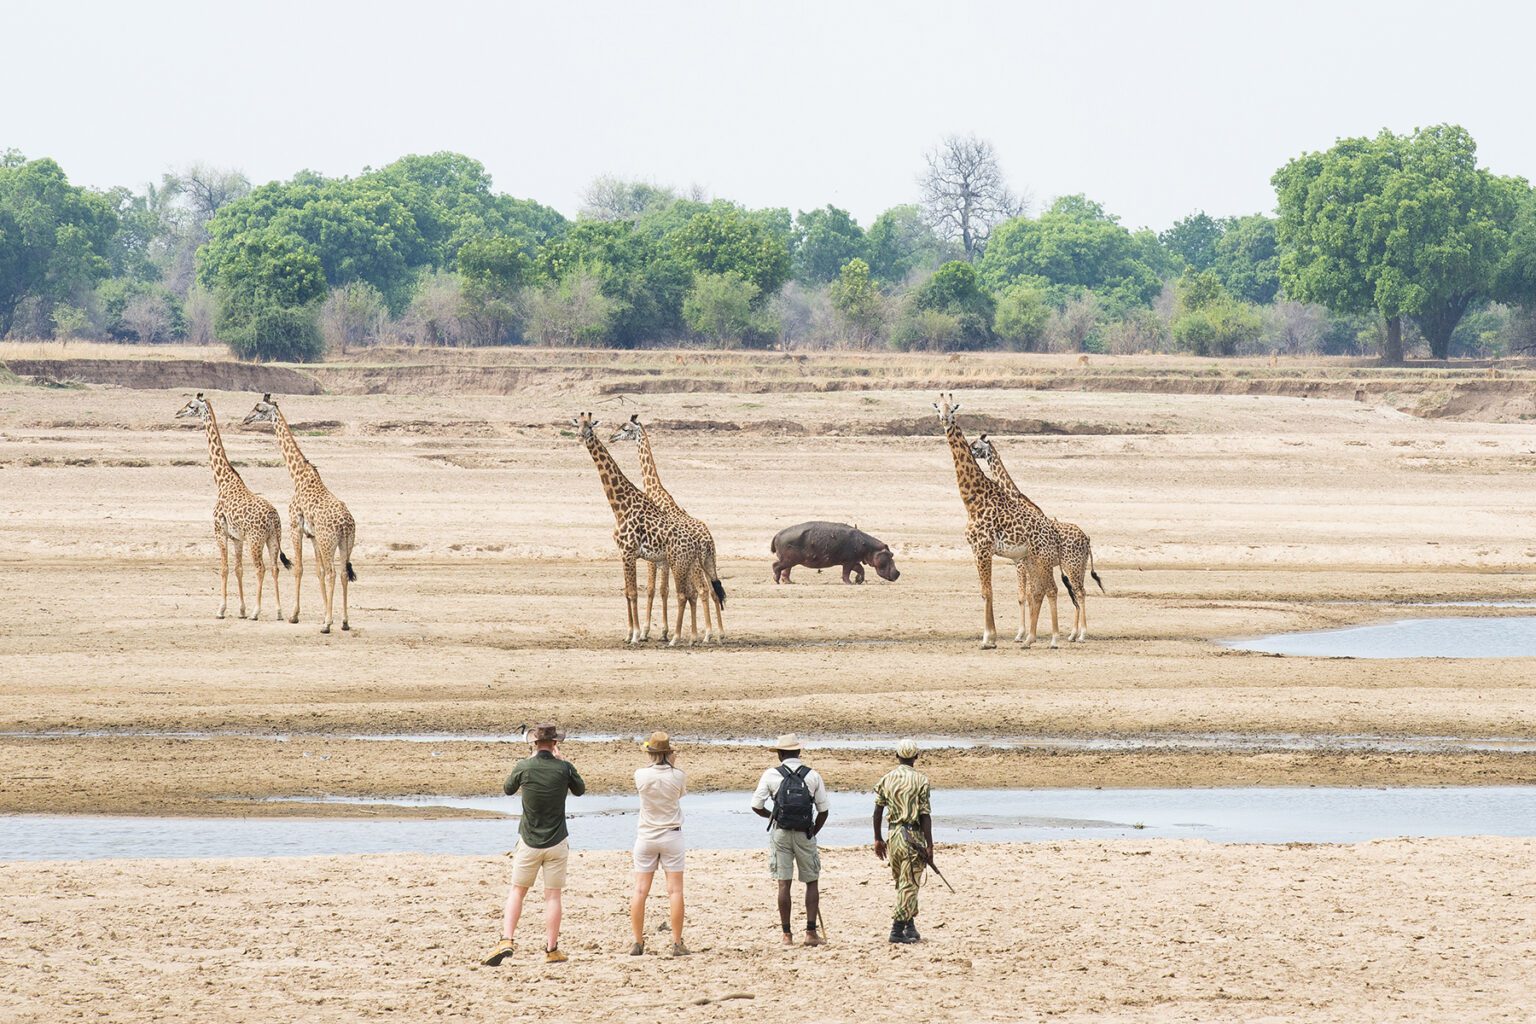 a herd of giraffe standing on top of a sandy field.